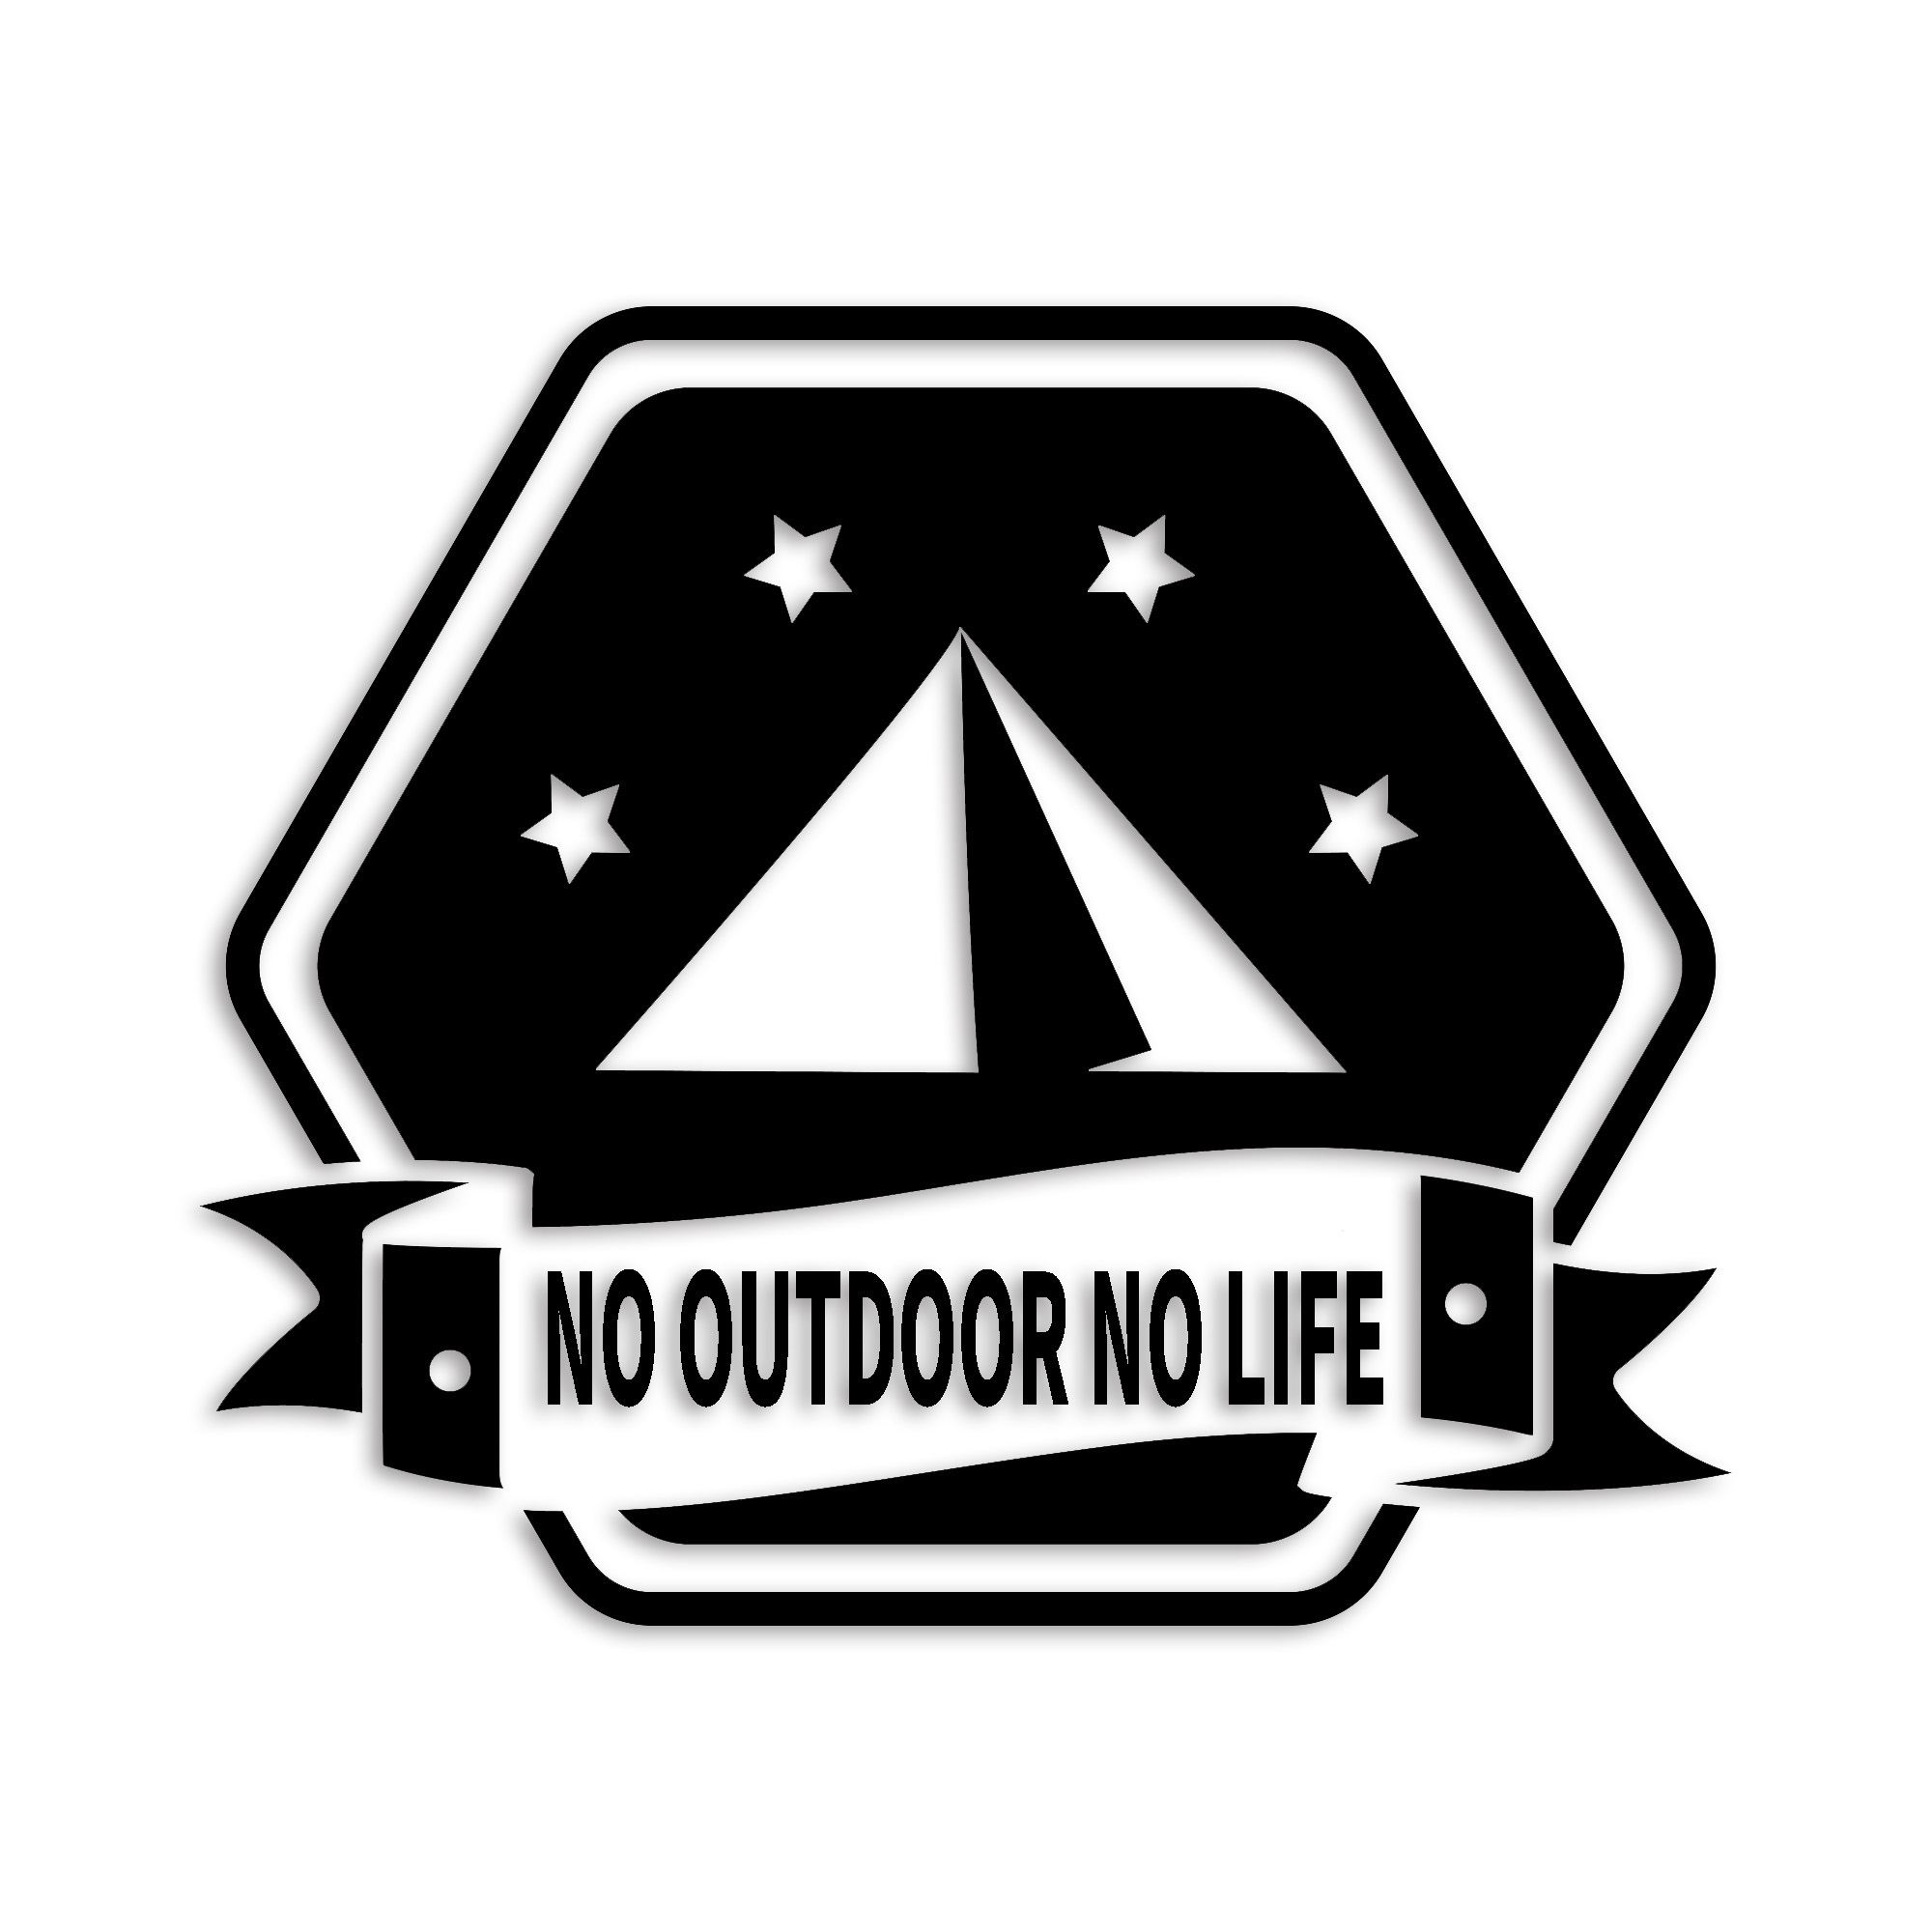 ノーアウトドアノーライフ カッティング ステッカー シール outdoor 山 斧 マーク シルエット シンプル 防水 車 デカール 1